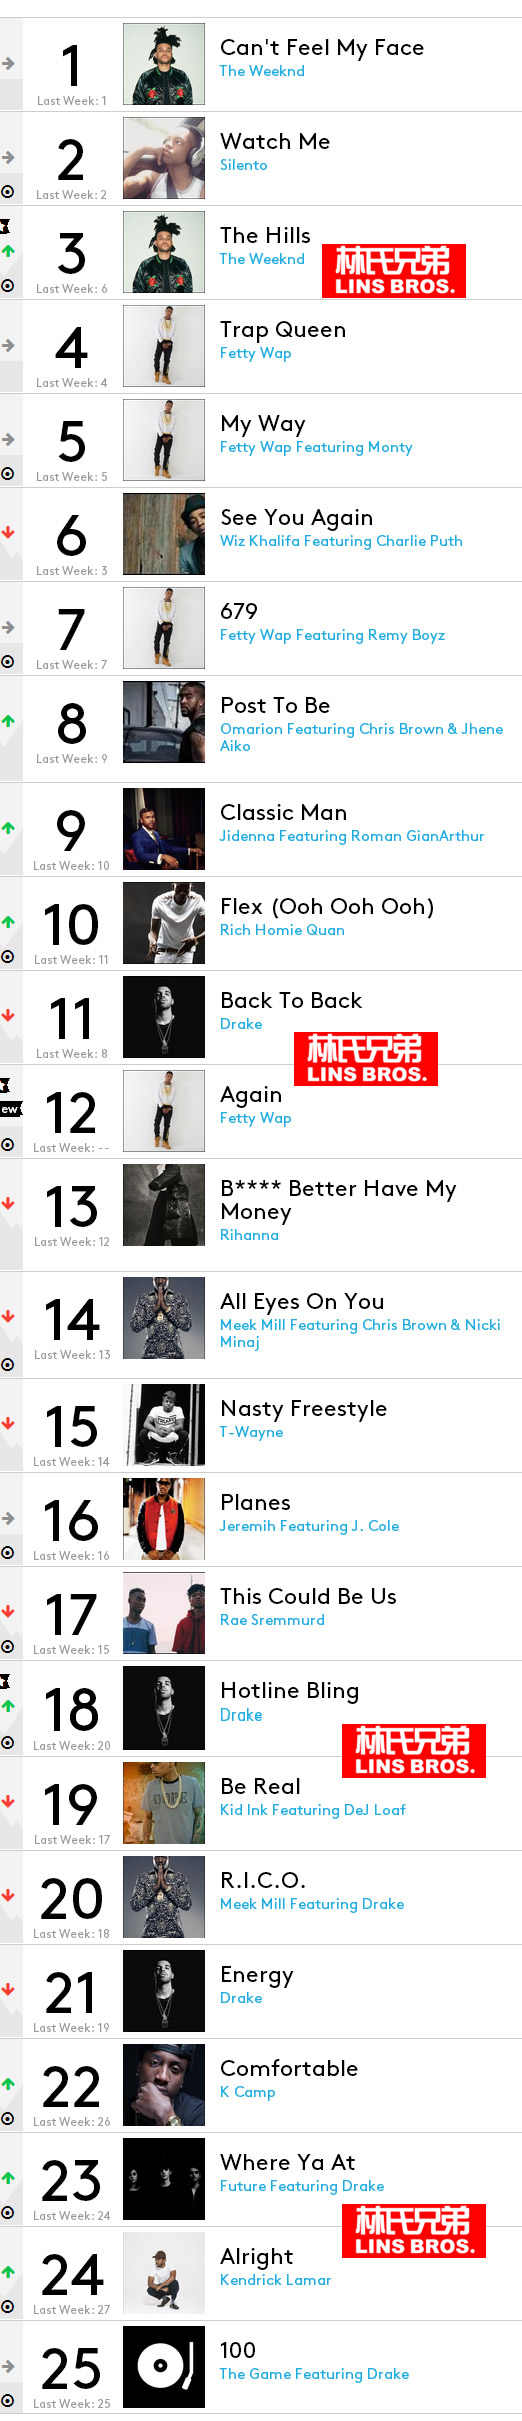 必看榜单! 本周Billboard 前1 25名嘻哈/R&B歌曲榜单..Drake有6首歌曲入榜 